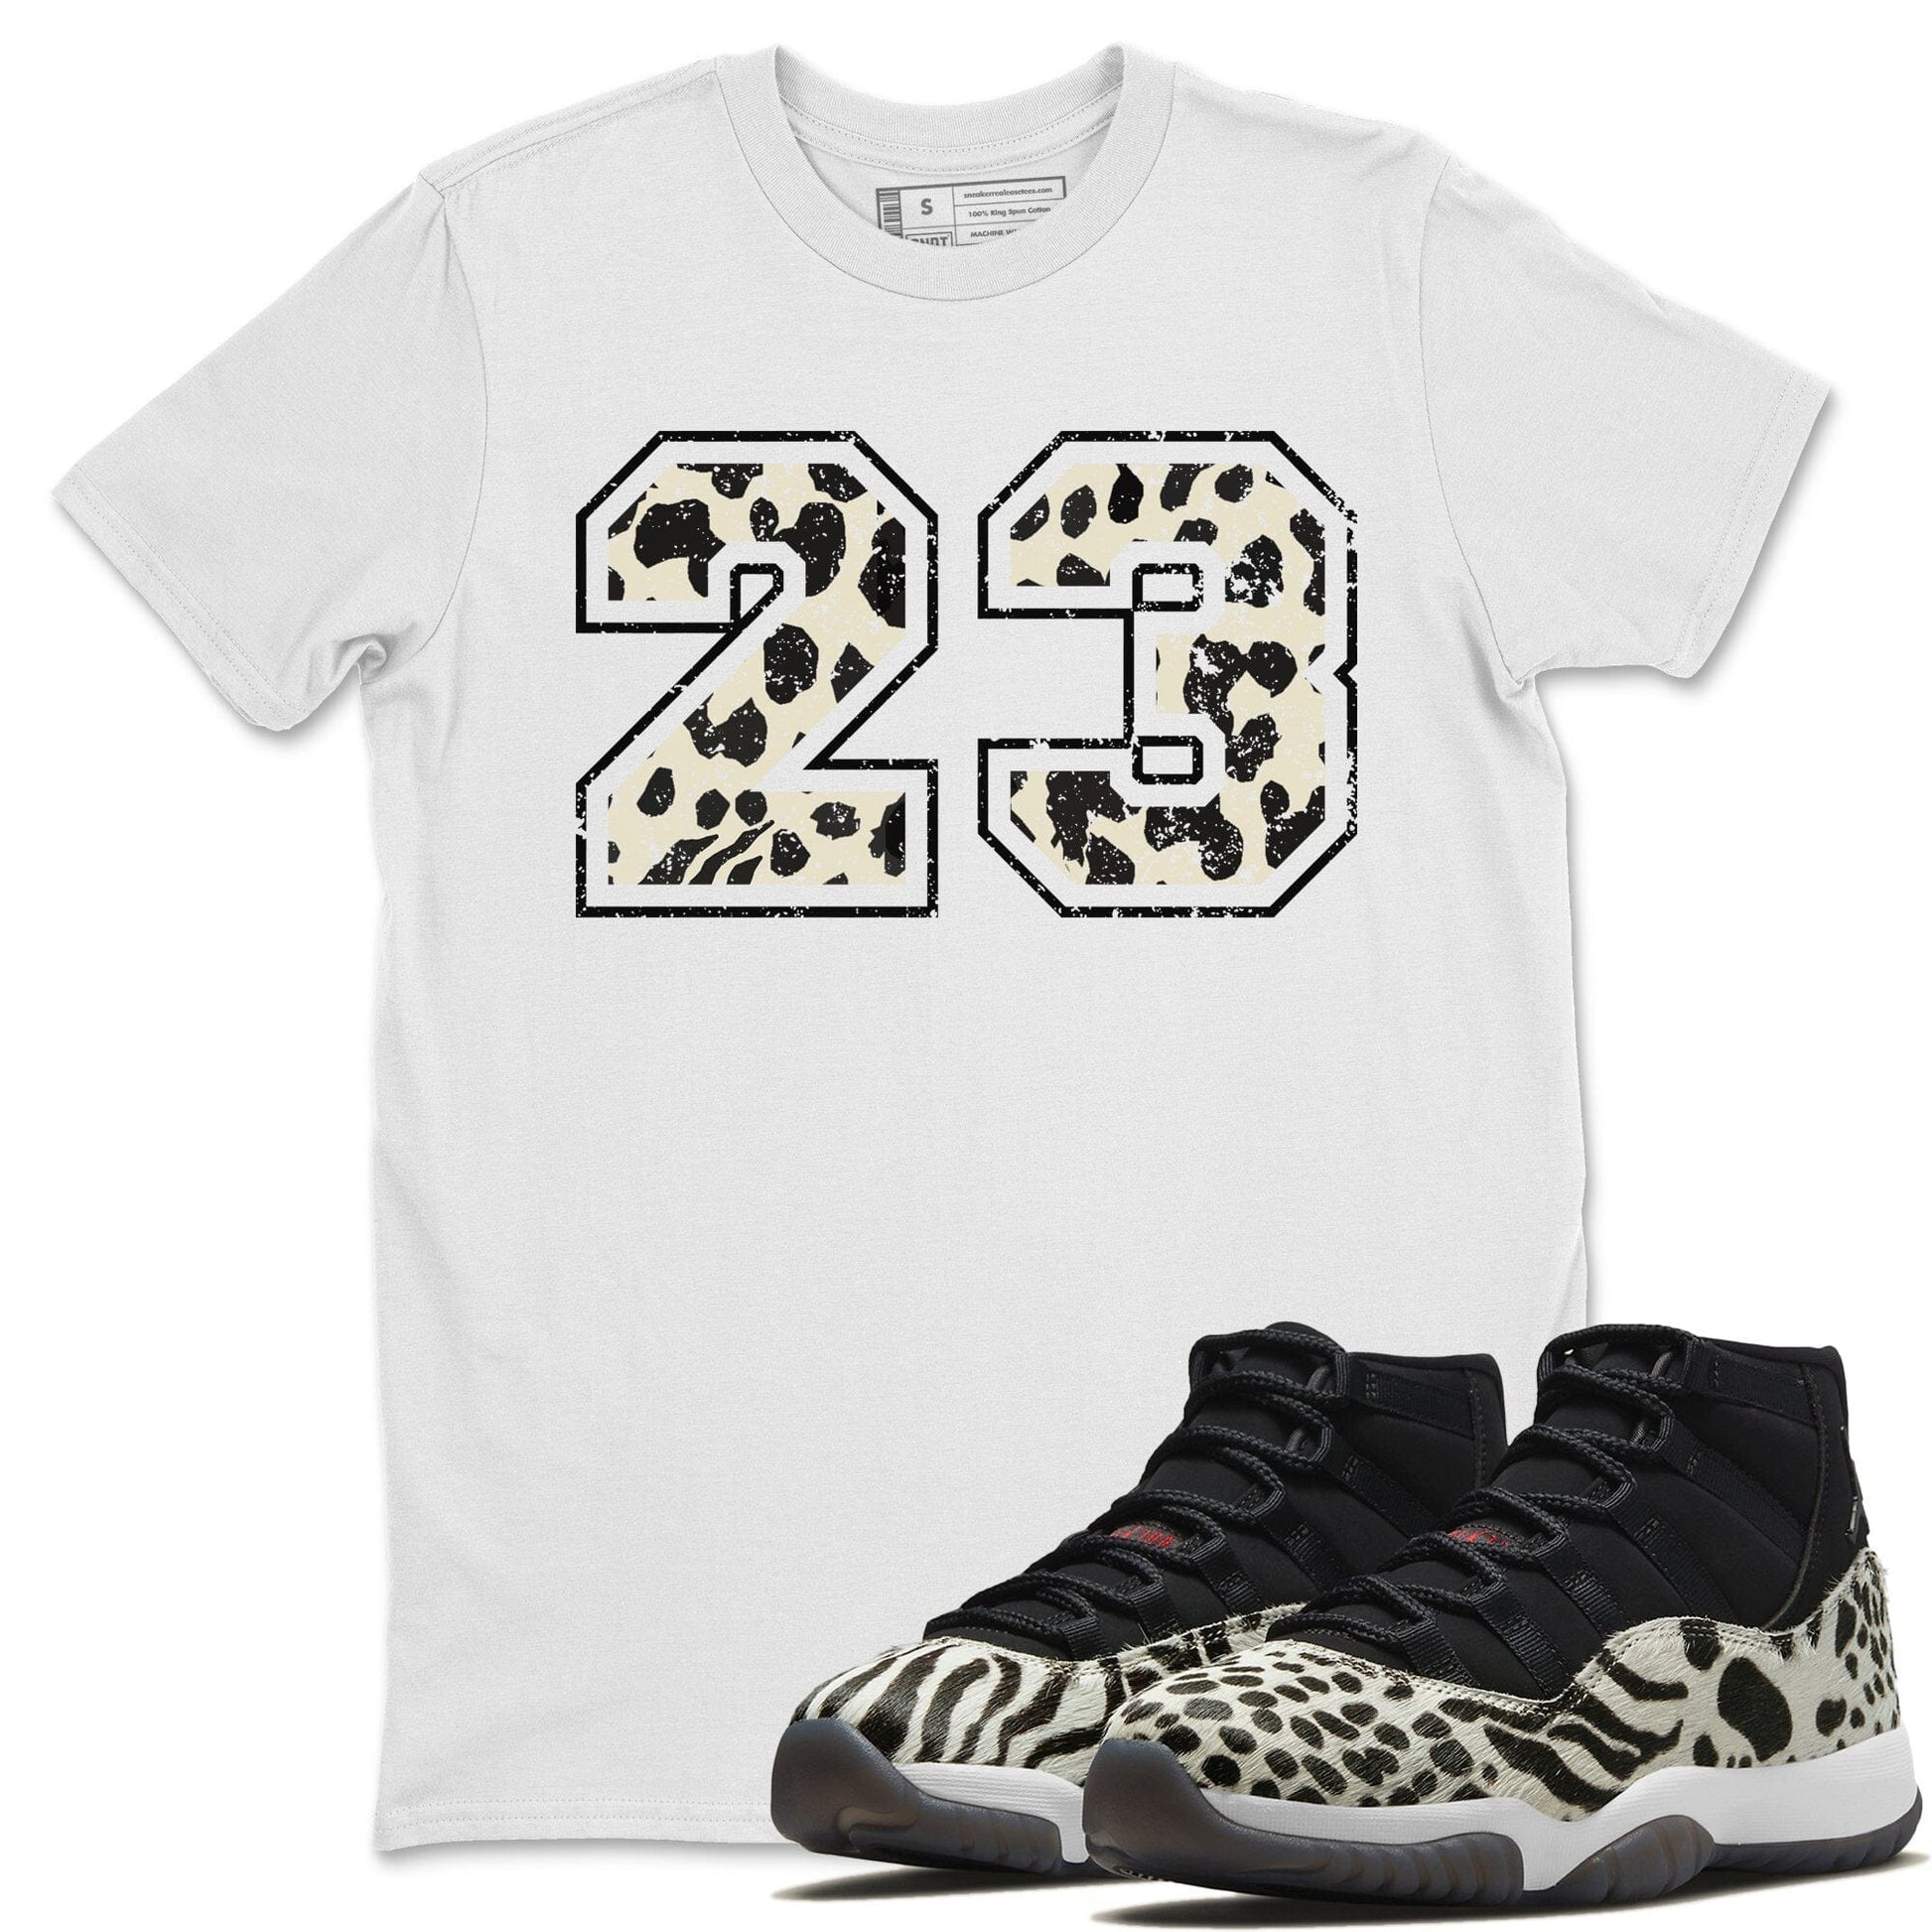 Jordan 11 Animal Instinct Sneaker Match Tees Number 23 Sneaker Tees Jordan 11 Animal Instinct Sneaker Release Tees Unisex Shirts